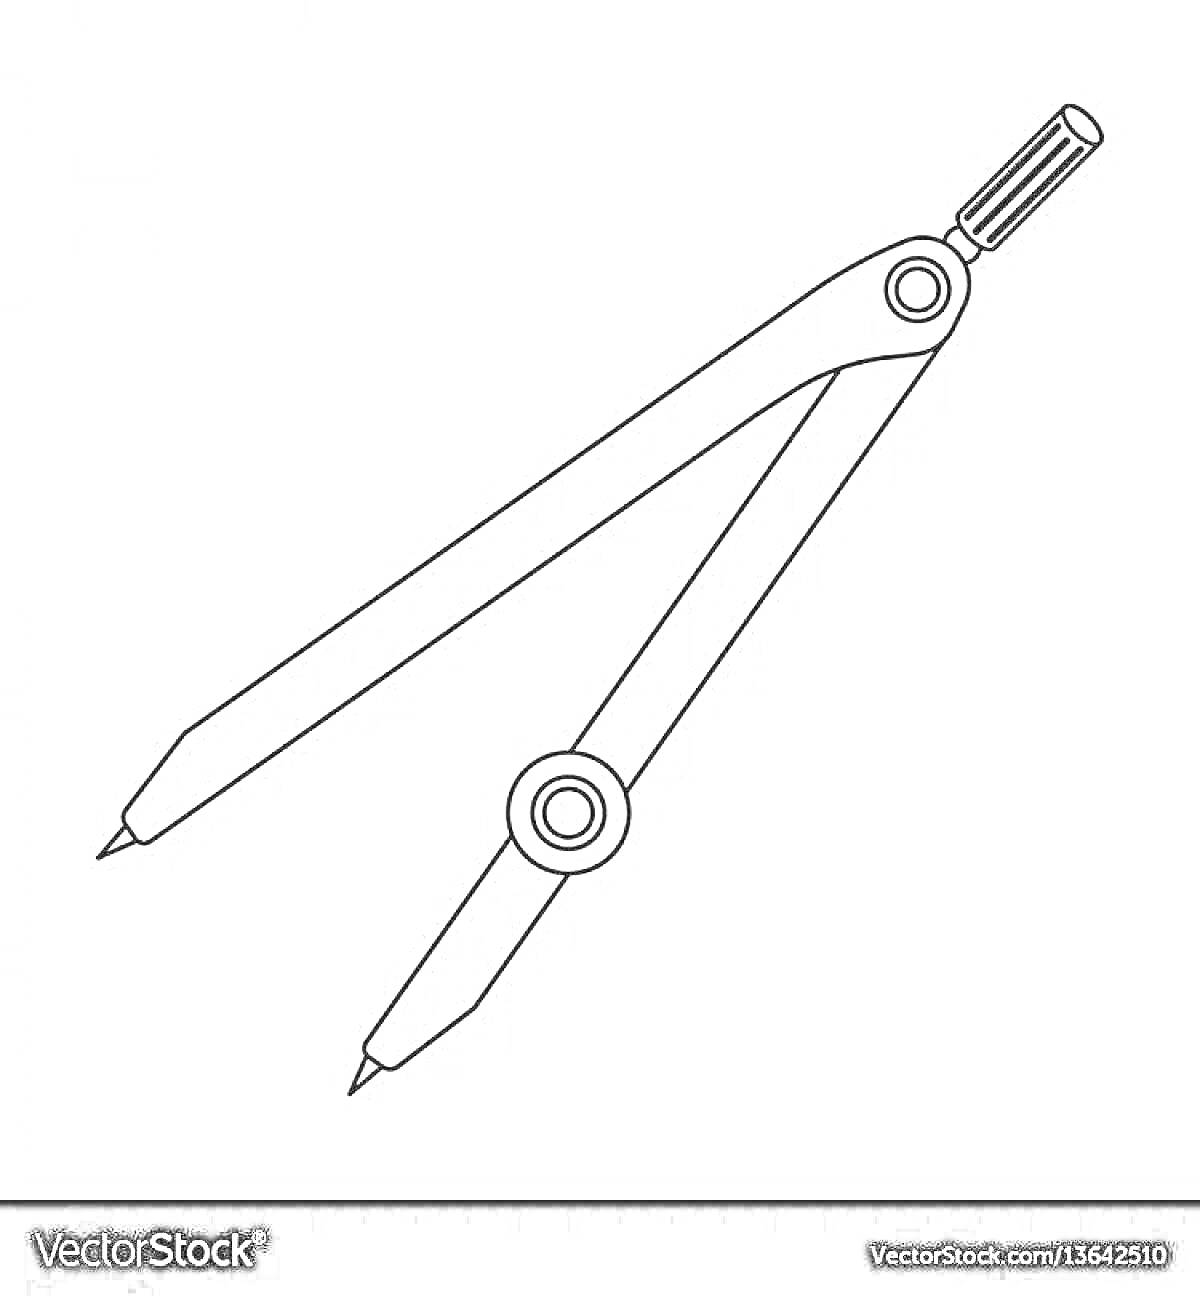 Раскраска Циркуль с двумя ножками и регулируемым винтом